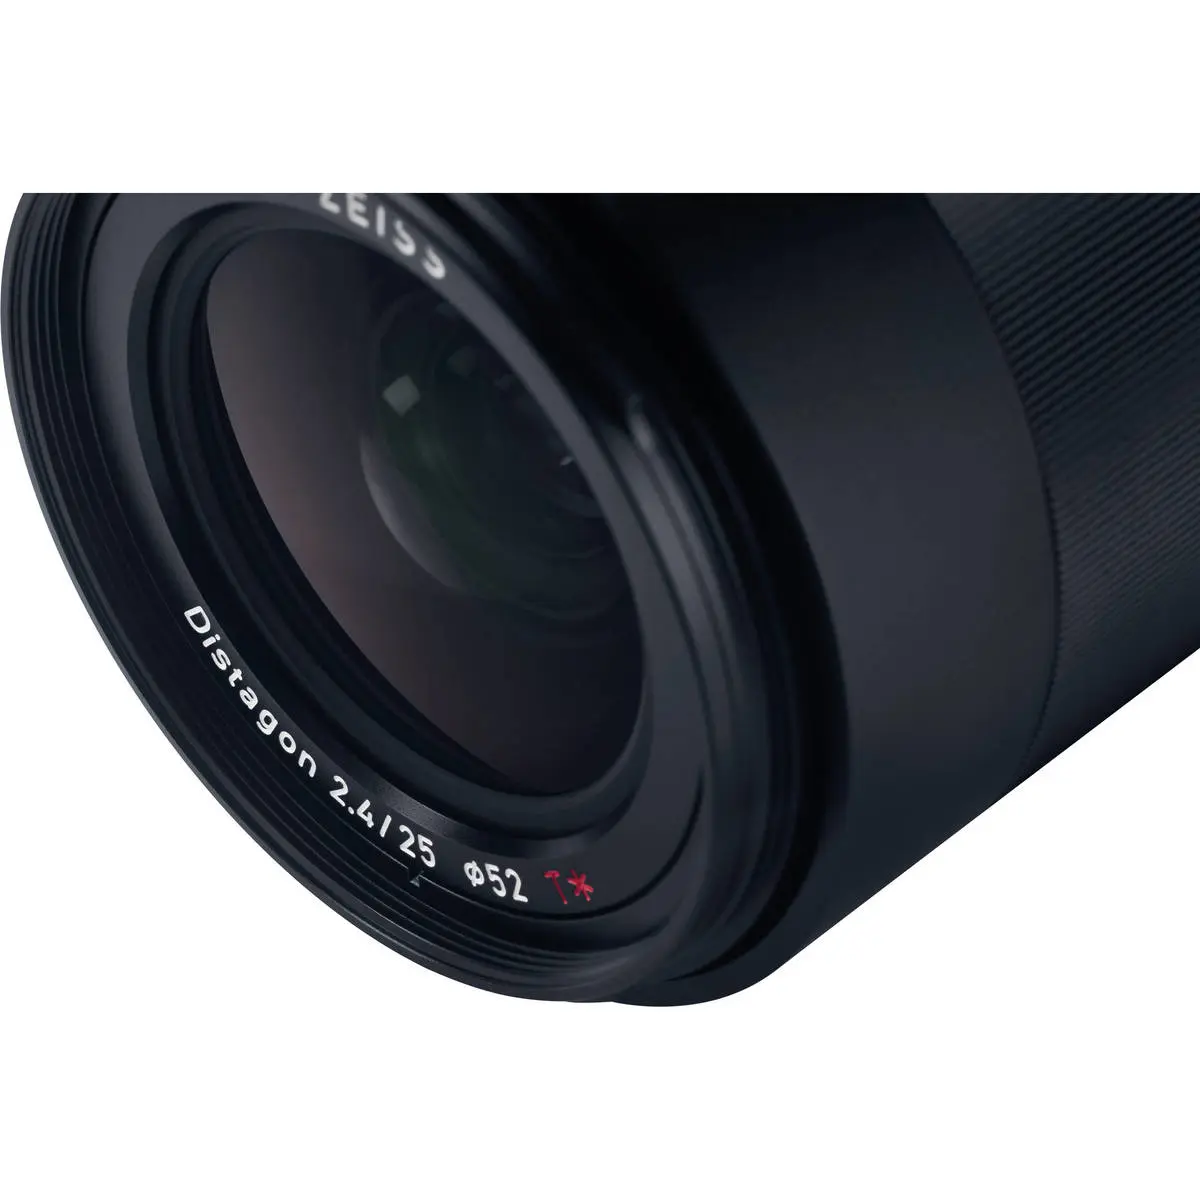 14. Carl Zeiss Loxia 2.4/25 (Sony FE) Lens